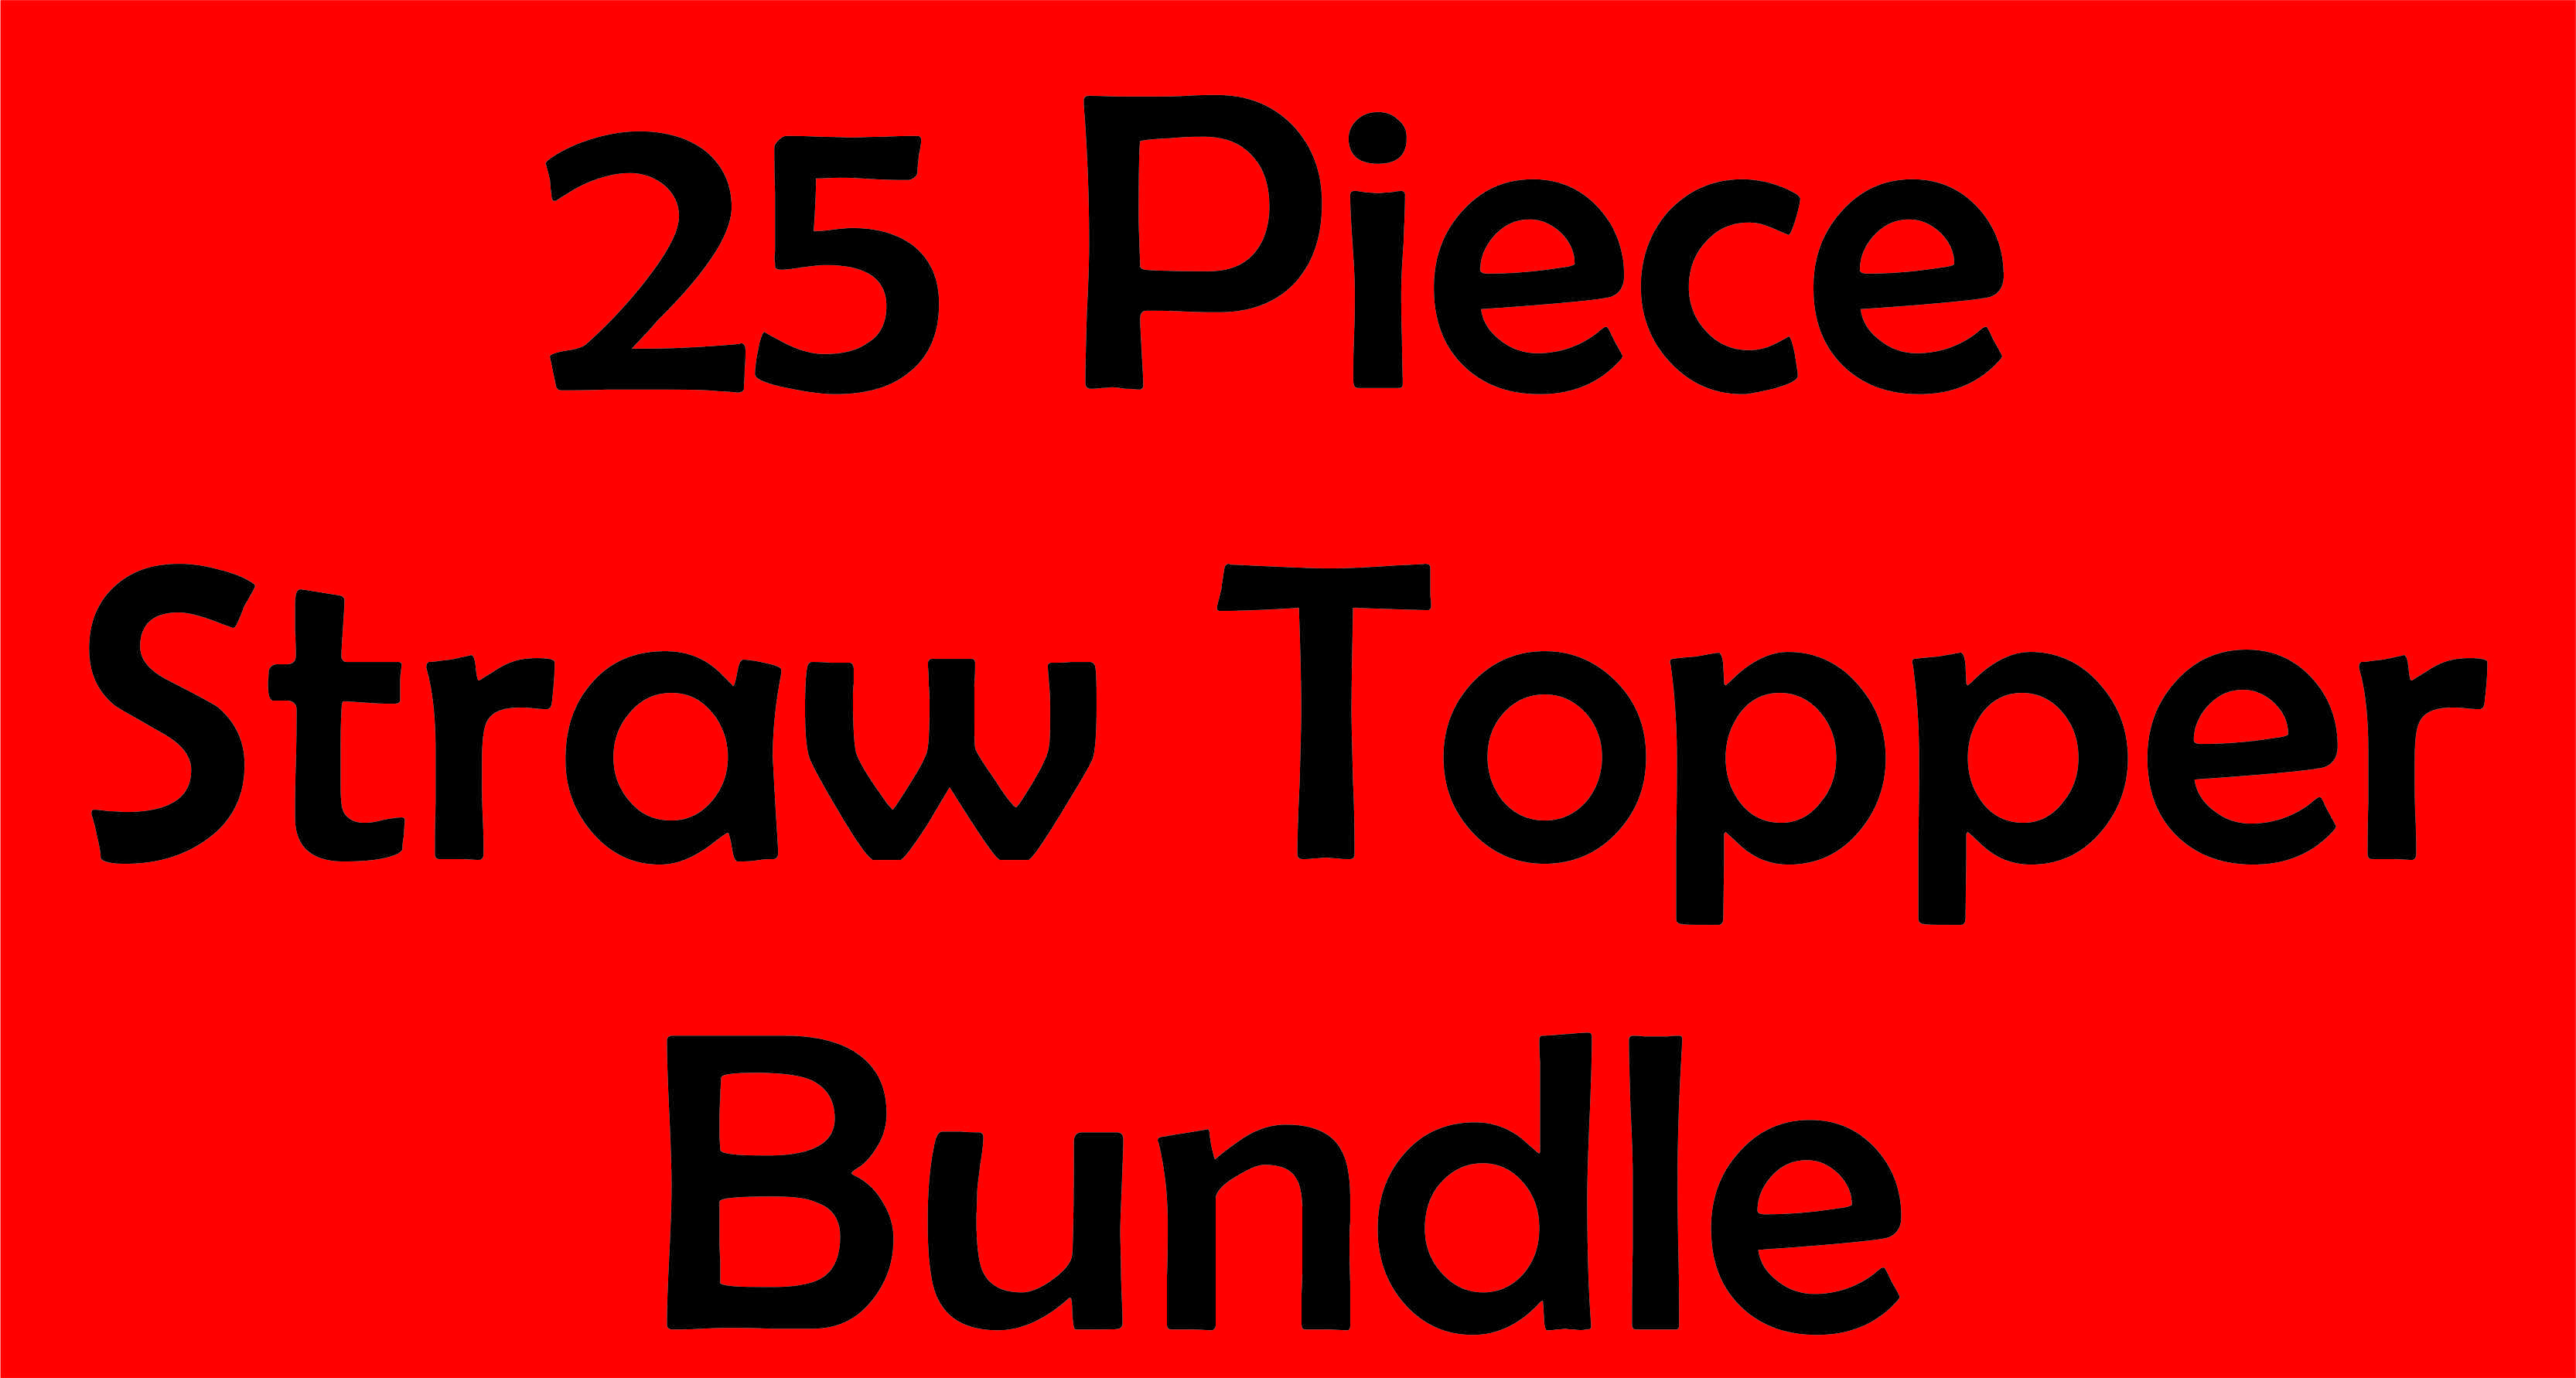 25 PC Straw Topper Bundle